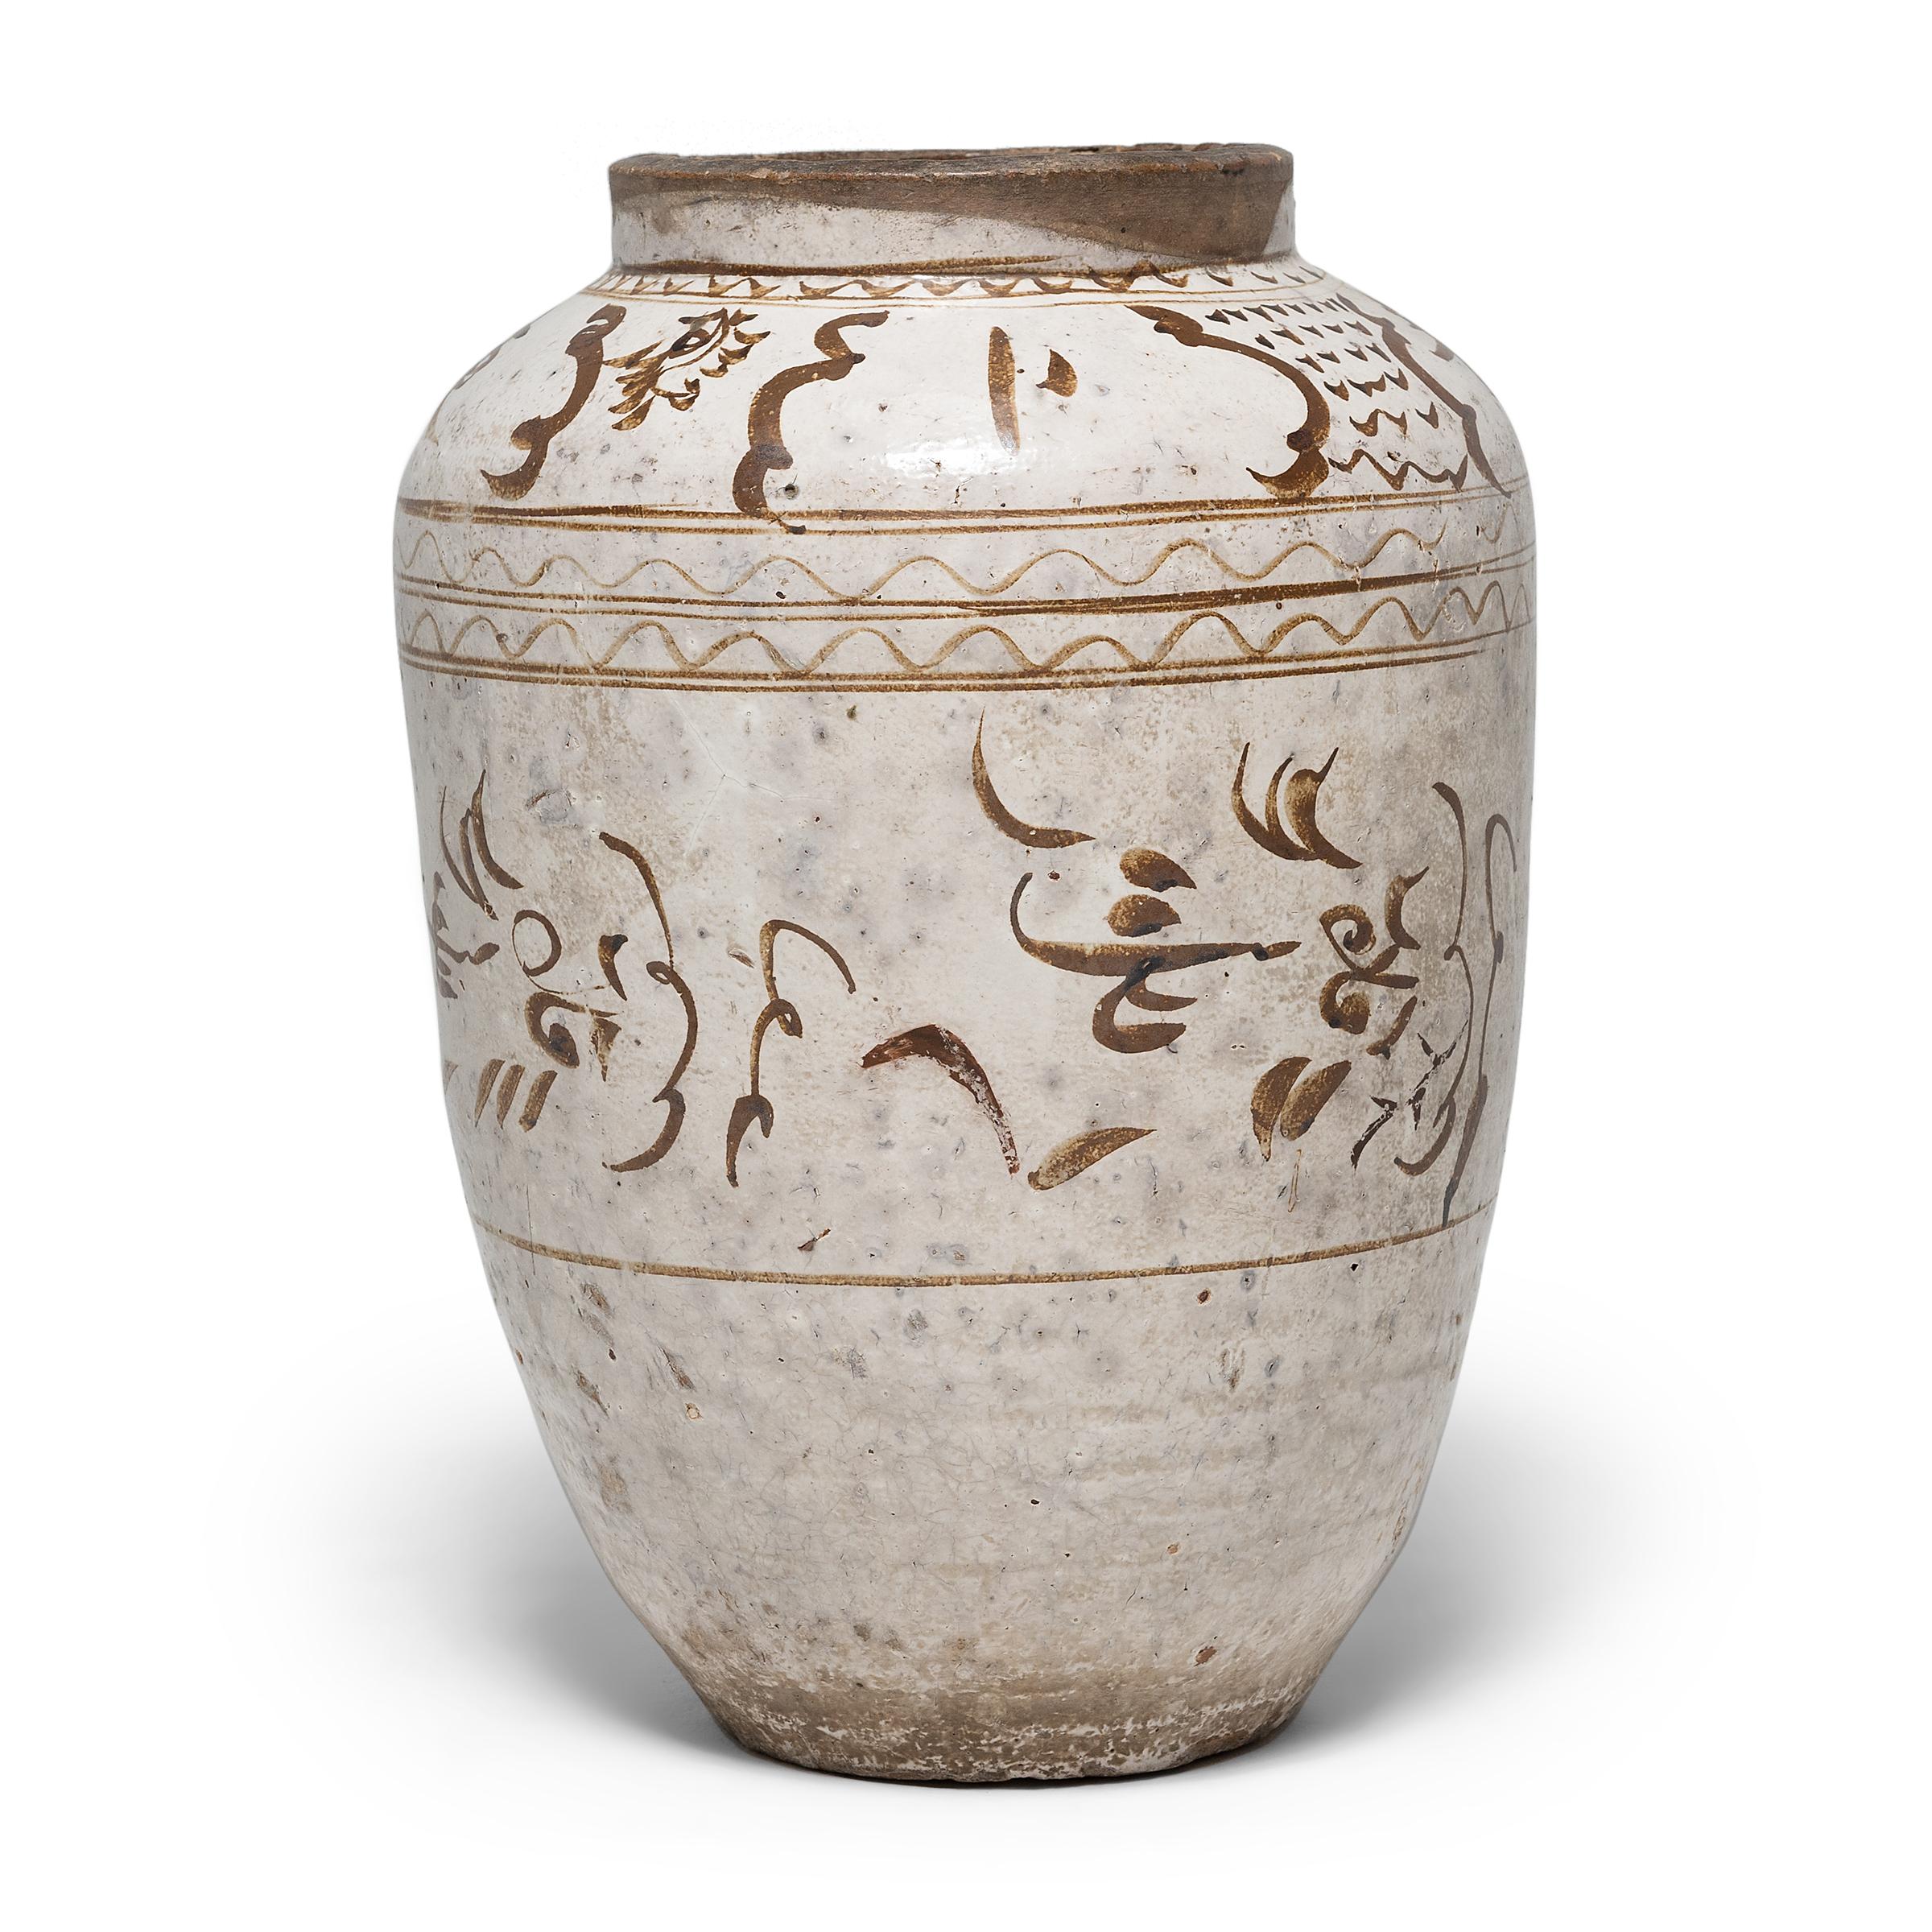 Dieses beeindruckende glasierte Gefäß stammt aus dem frühen 17. Jahrhundert und wurde in einer Küche der Ming-Dynastie zur Aufbewahrung von Gewürzen oder Essiggurken verwendet. Das große Gefäß hat eine elegante, spitz zulaufende Form und ist mit